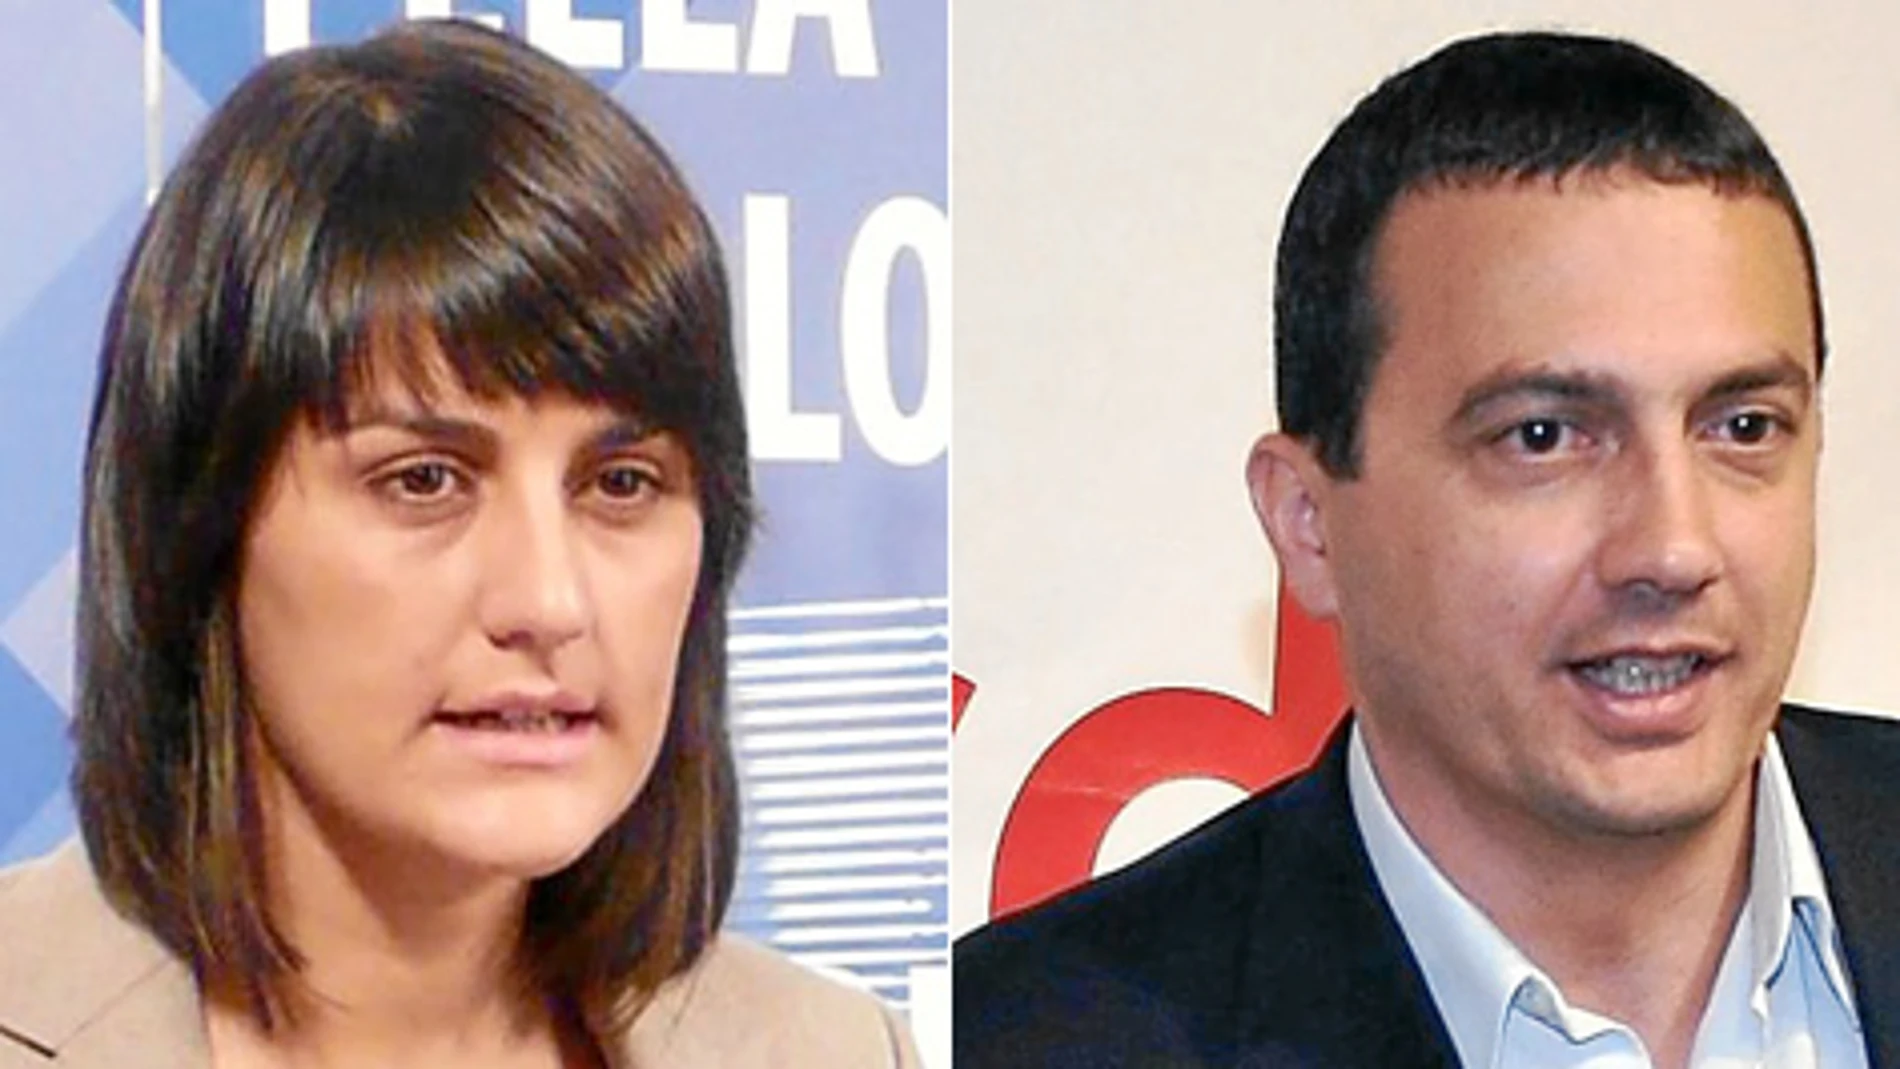 María González Veracruz, diputada del PSOE por Murcia y José Antonio Pujante, coordinador regional de Izquierda Unida-Verdes